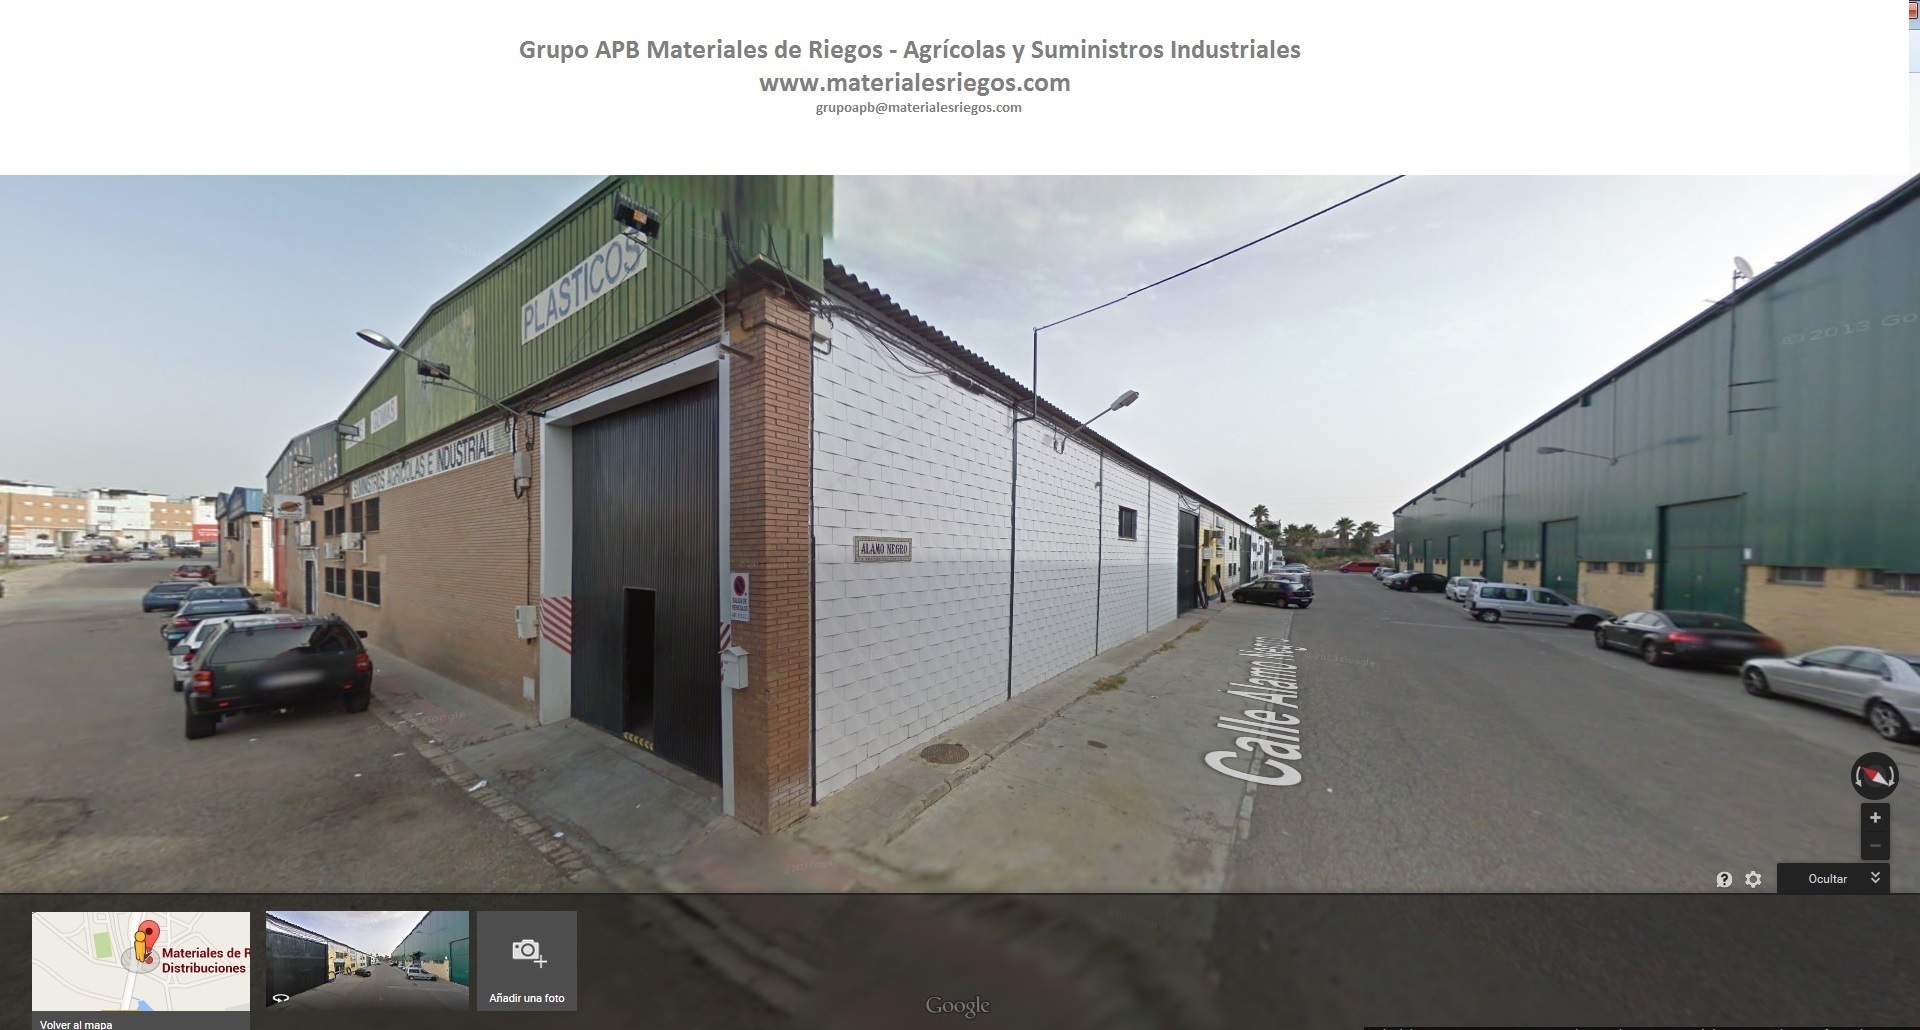 GRUPO_APB_Materiales_de_riegos_y_Suministros_industriales